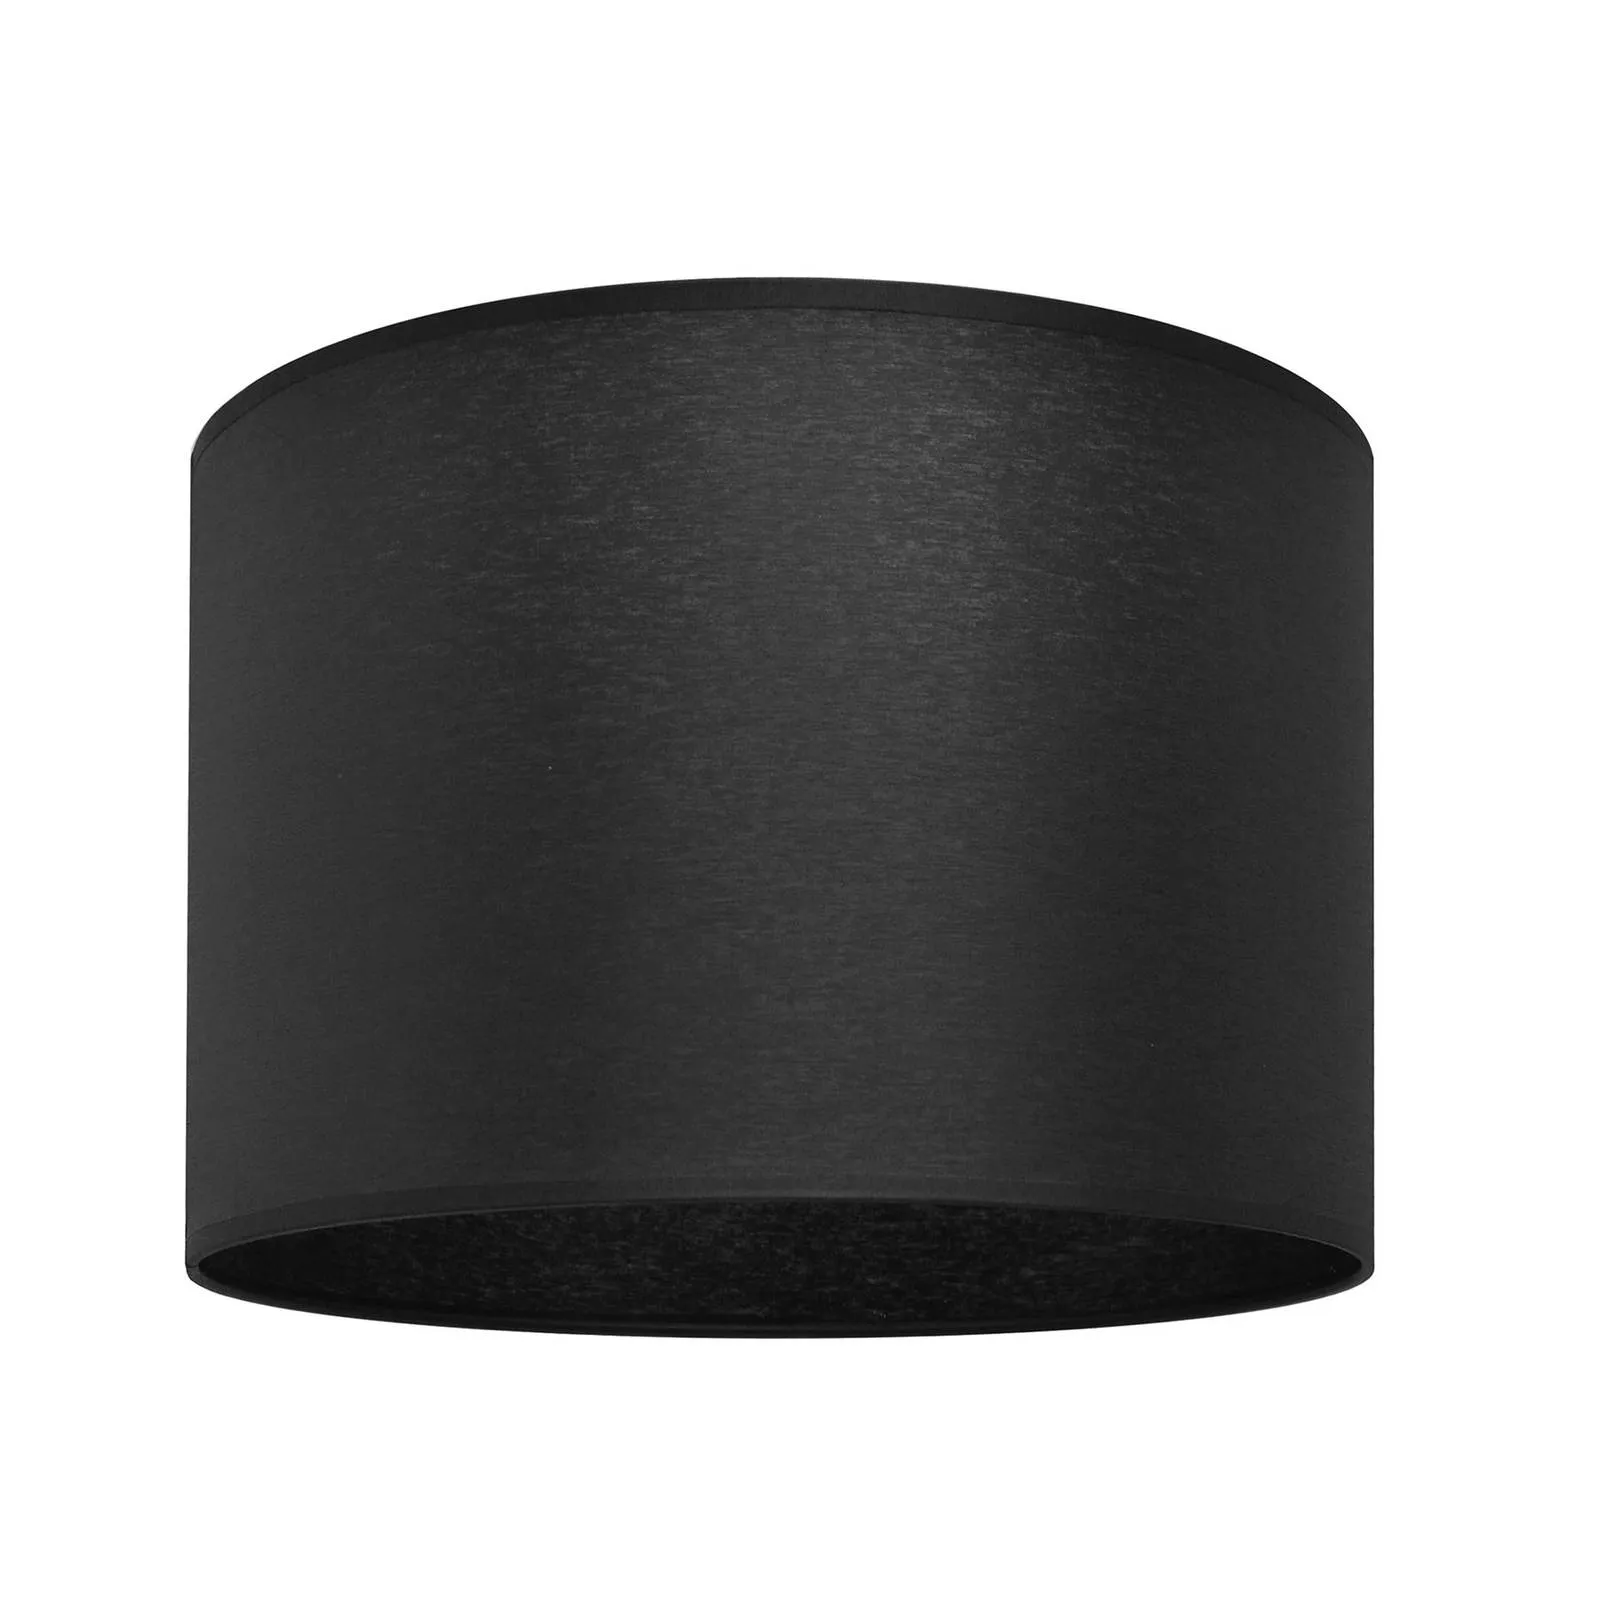 Alba lampshade, Ø 20 cm, E27, black